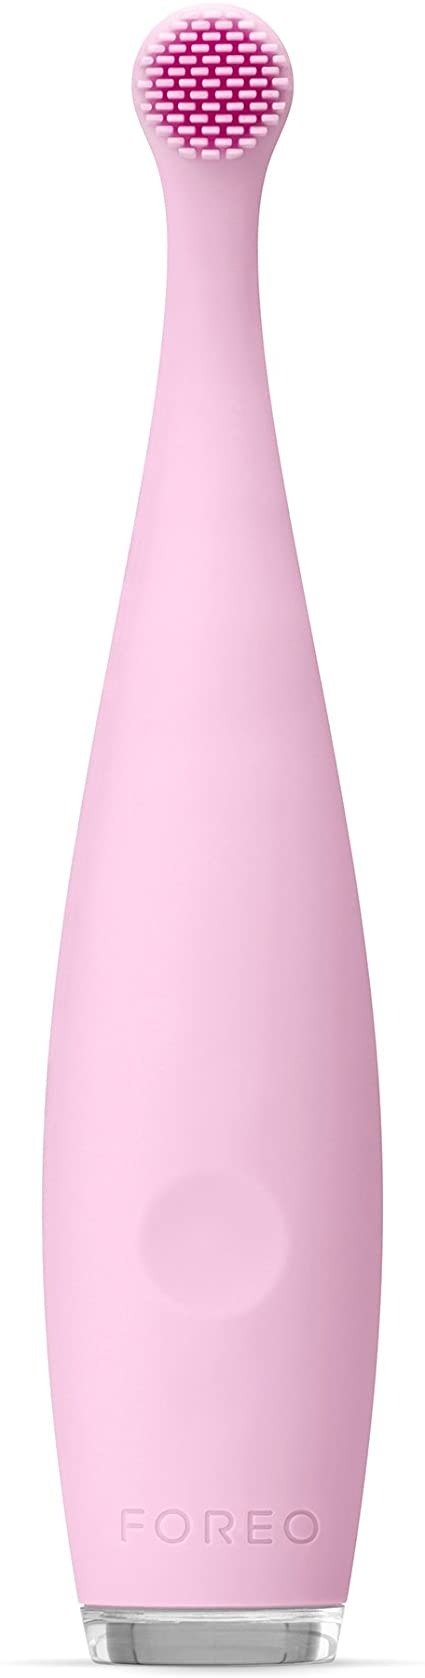 硅胶牙刷-粉色